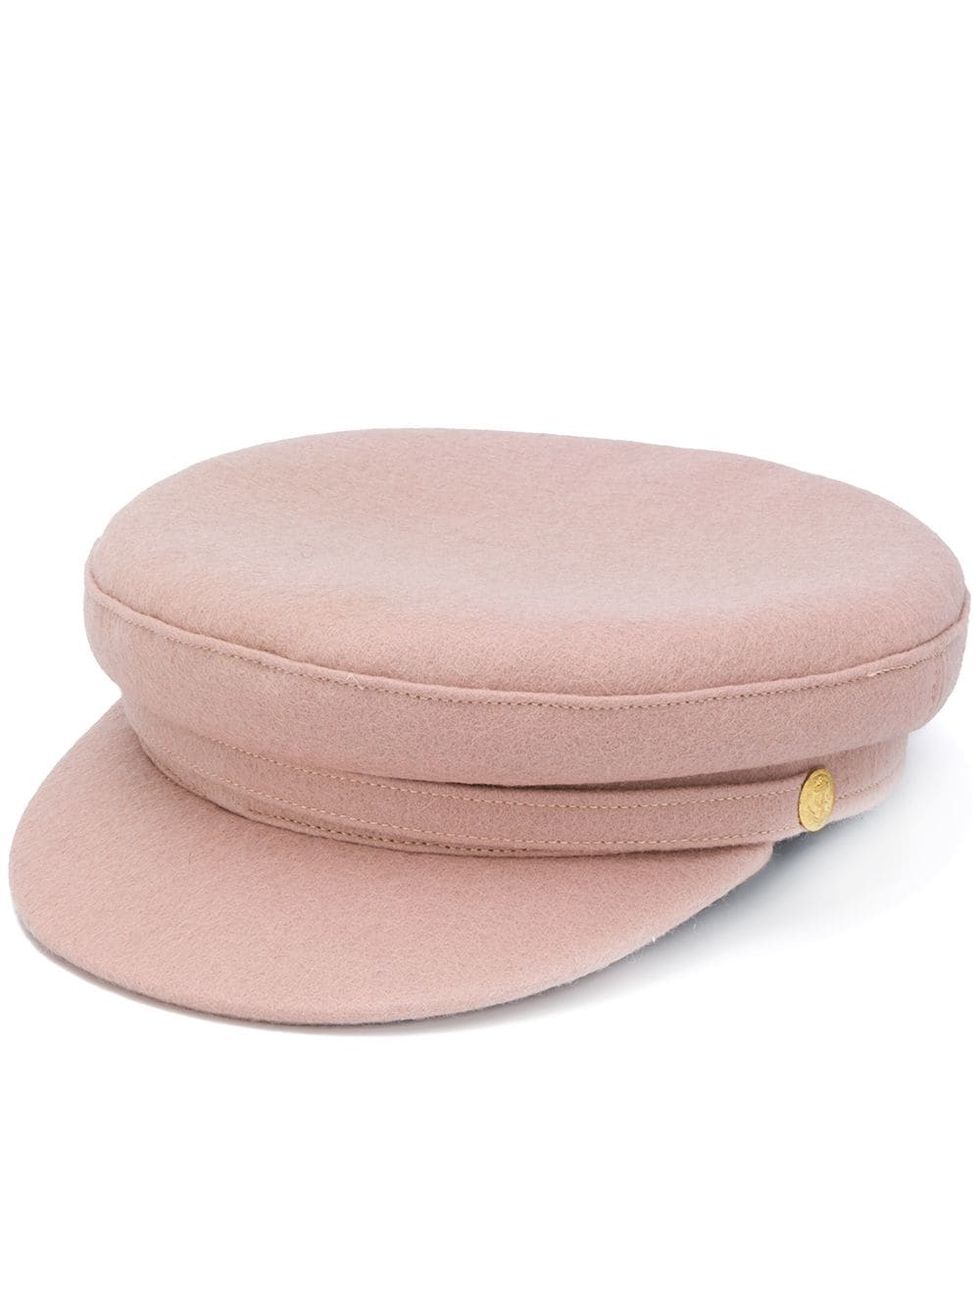 Manokhi 粉色報童帽